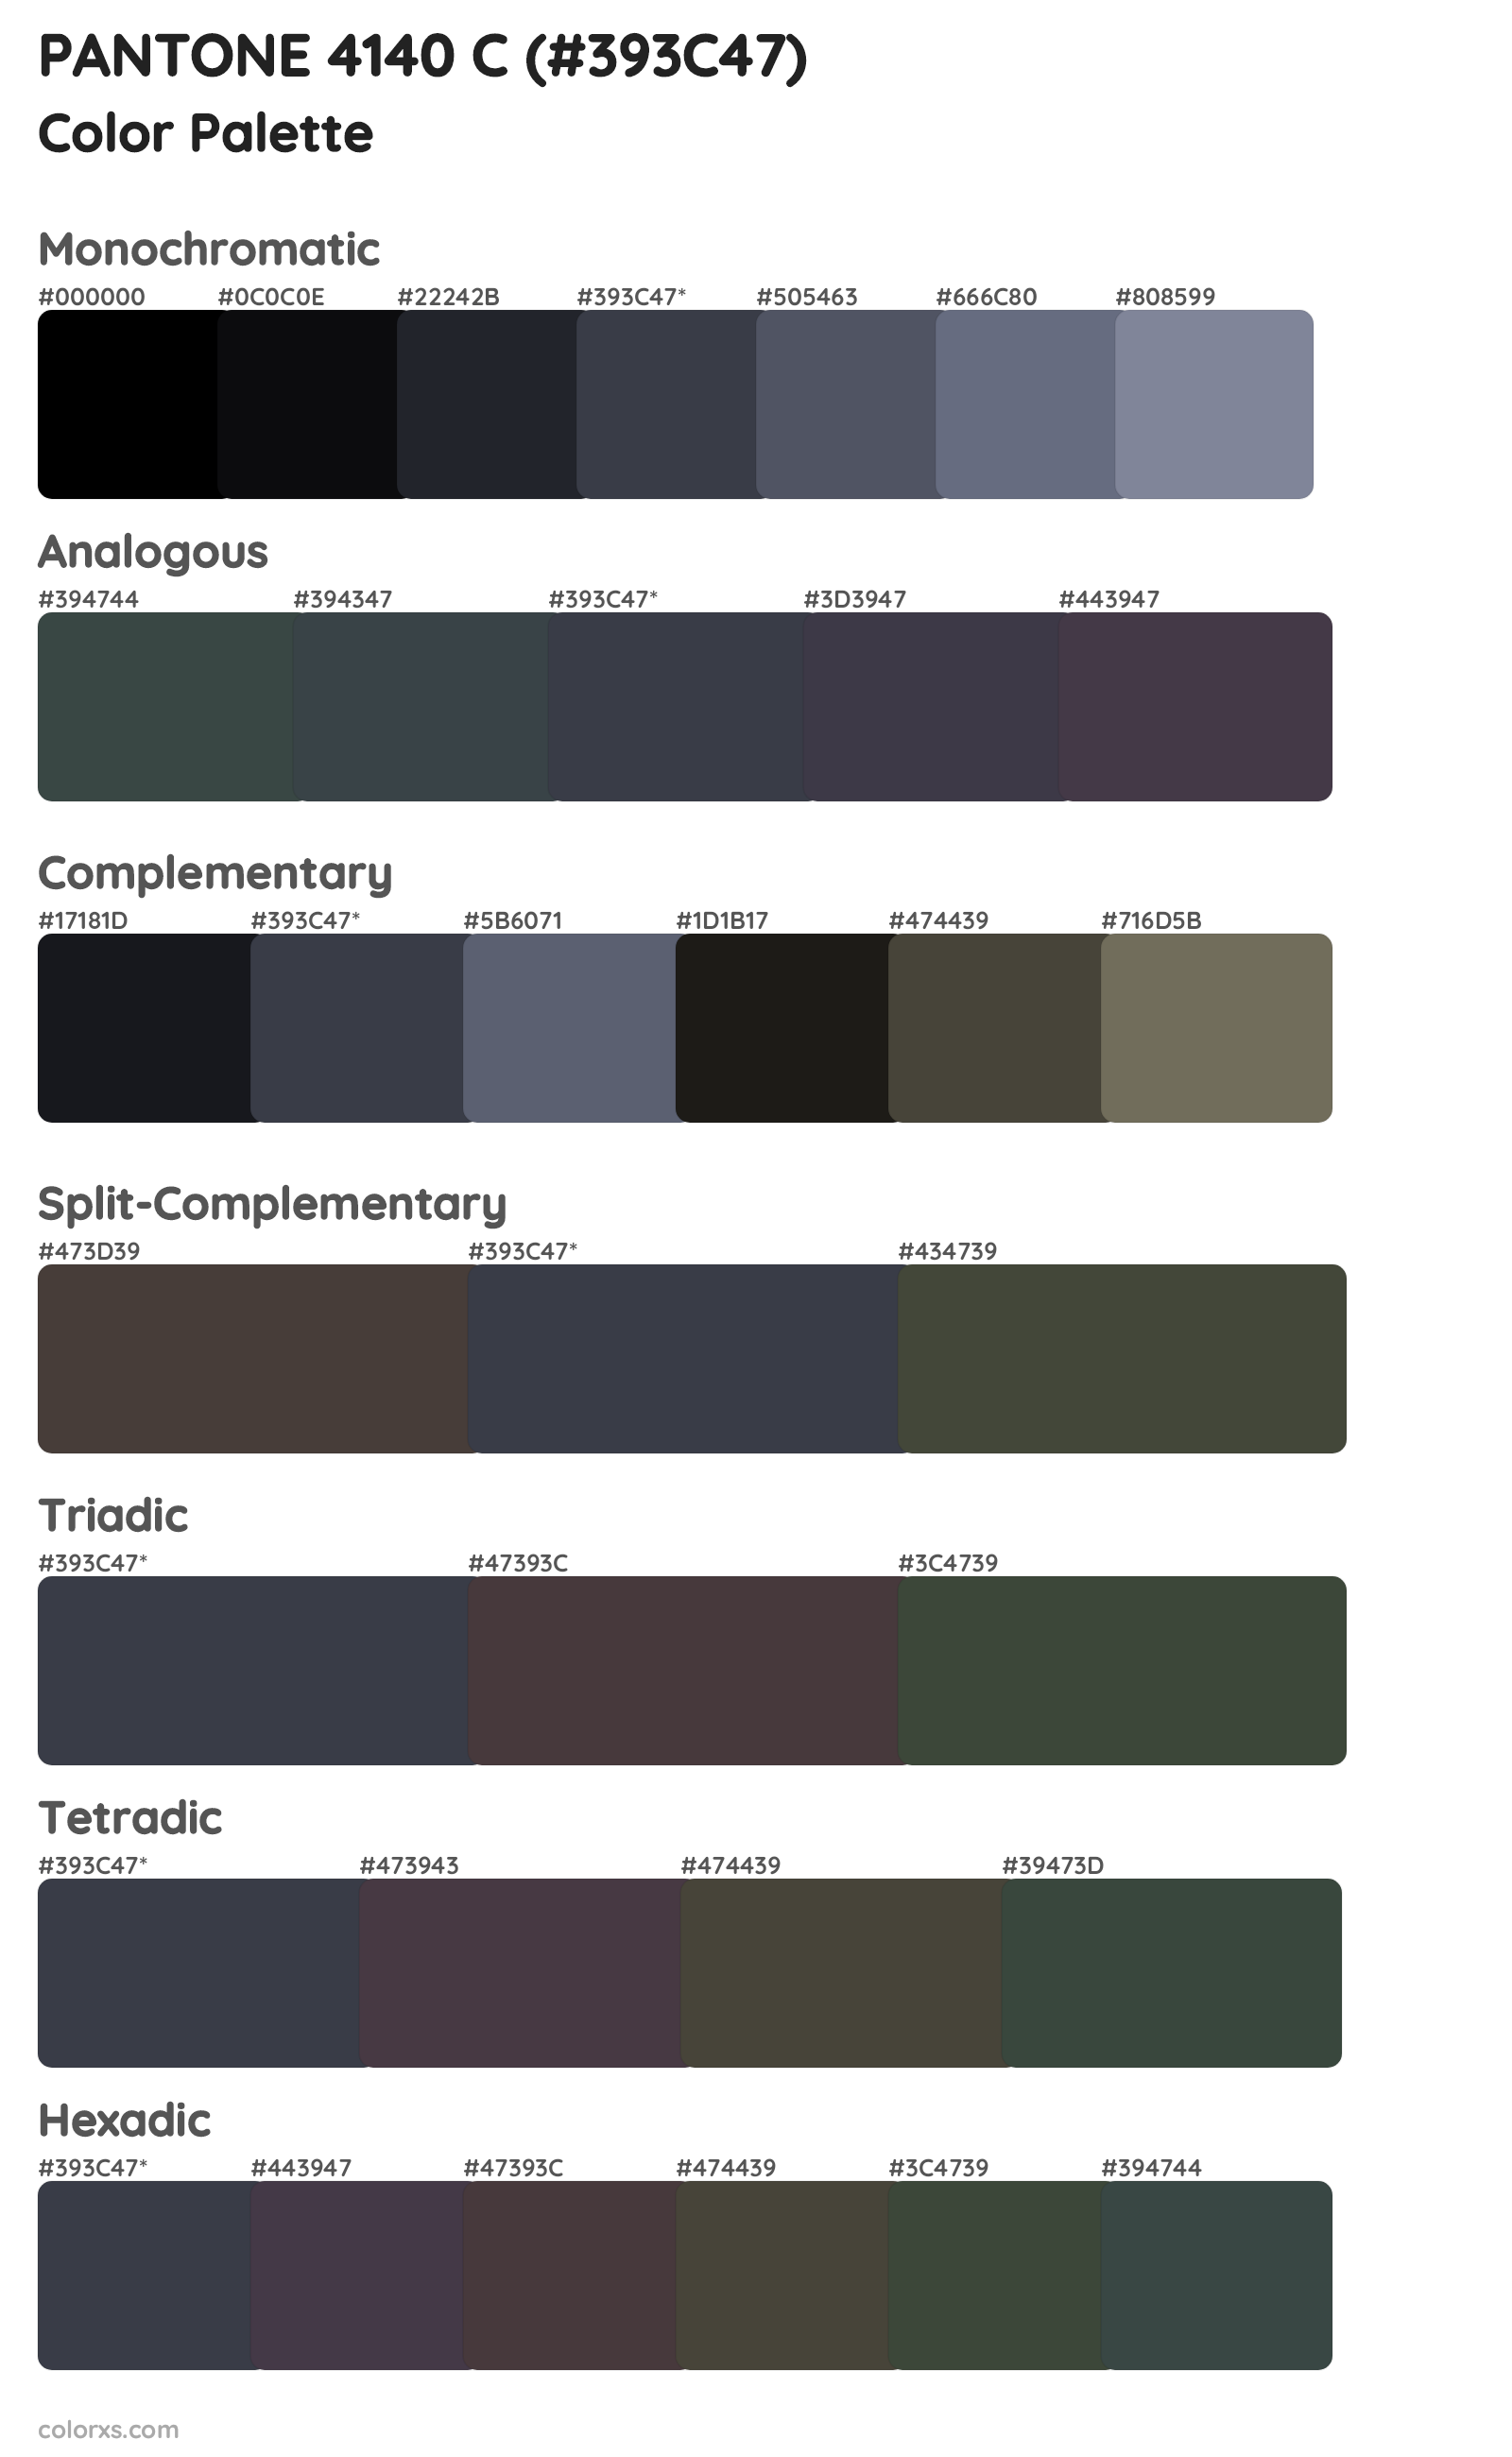 PANTONE 4140 C Color Scheme Palettes